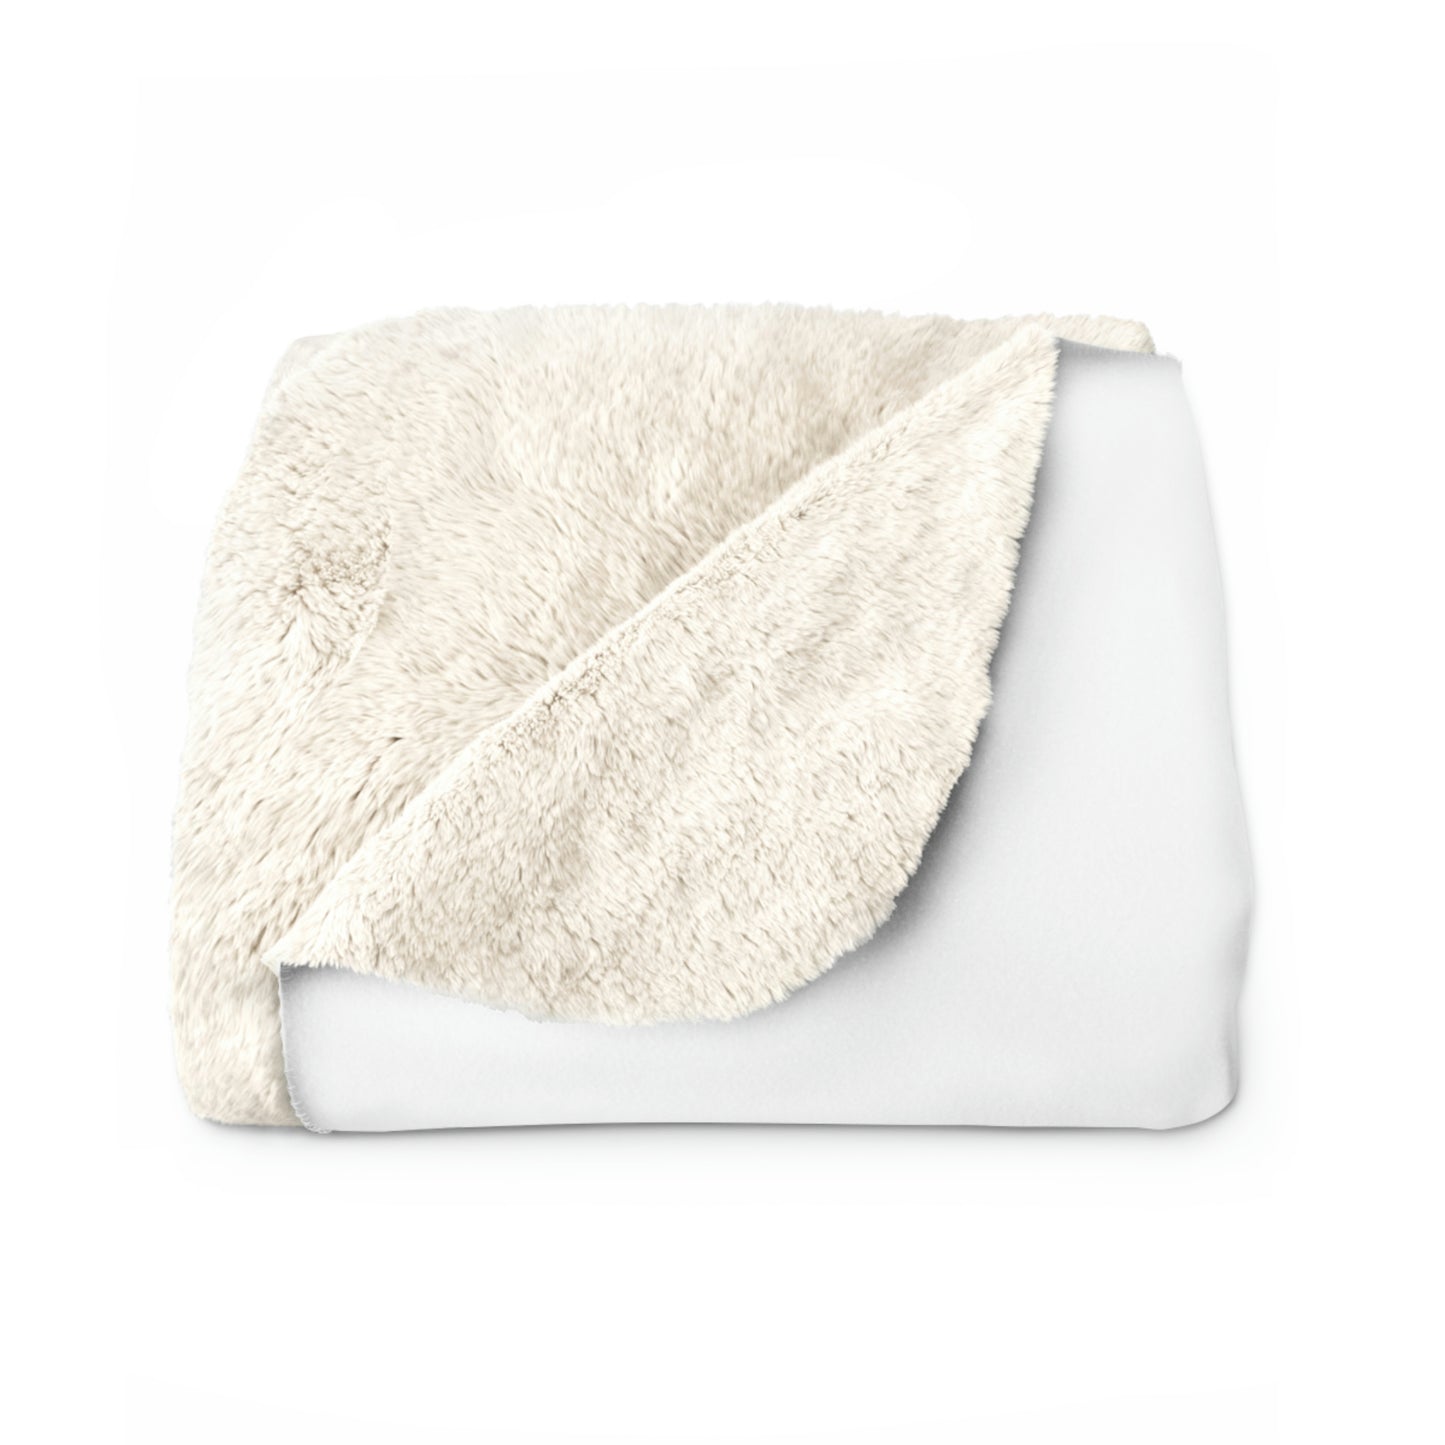 White TGBTG Sherpa Fleece Blanket